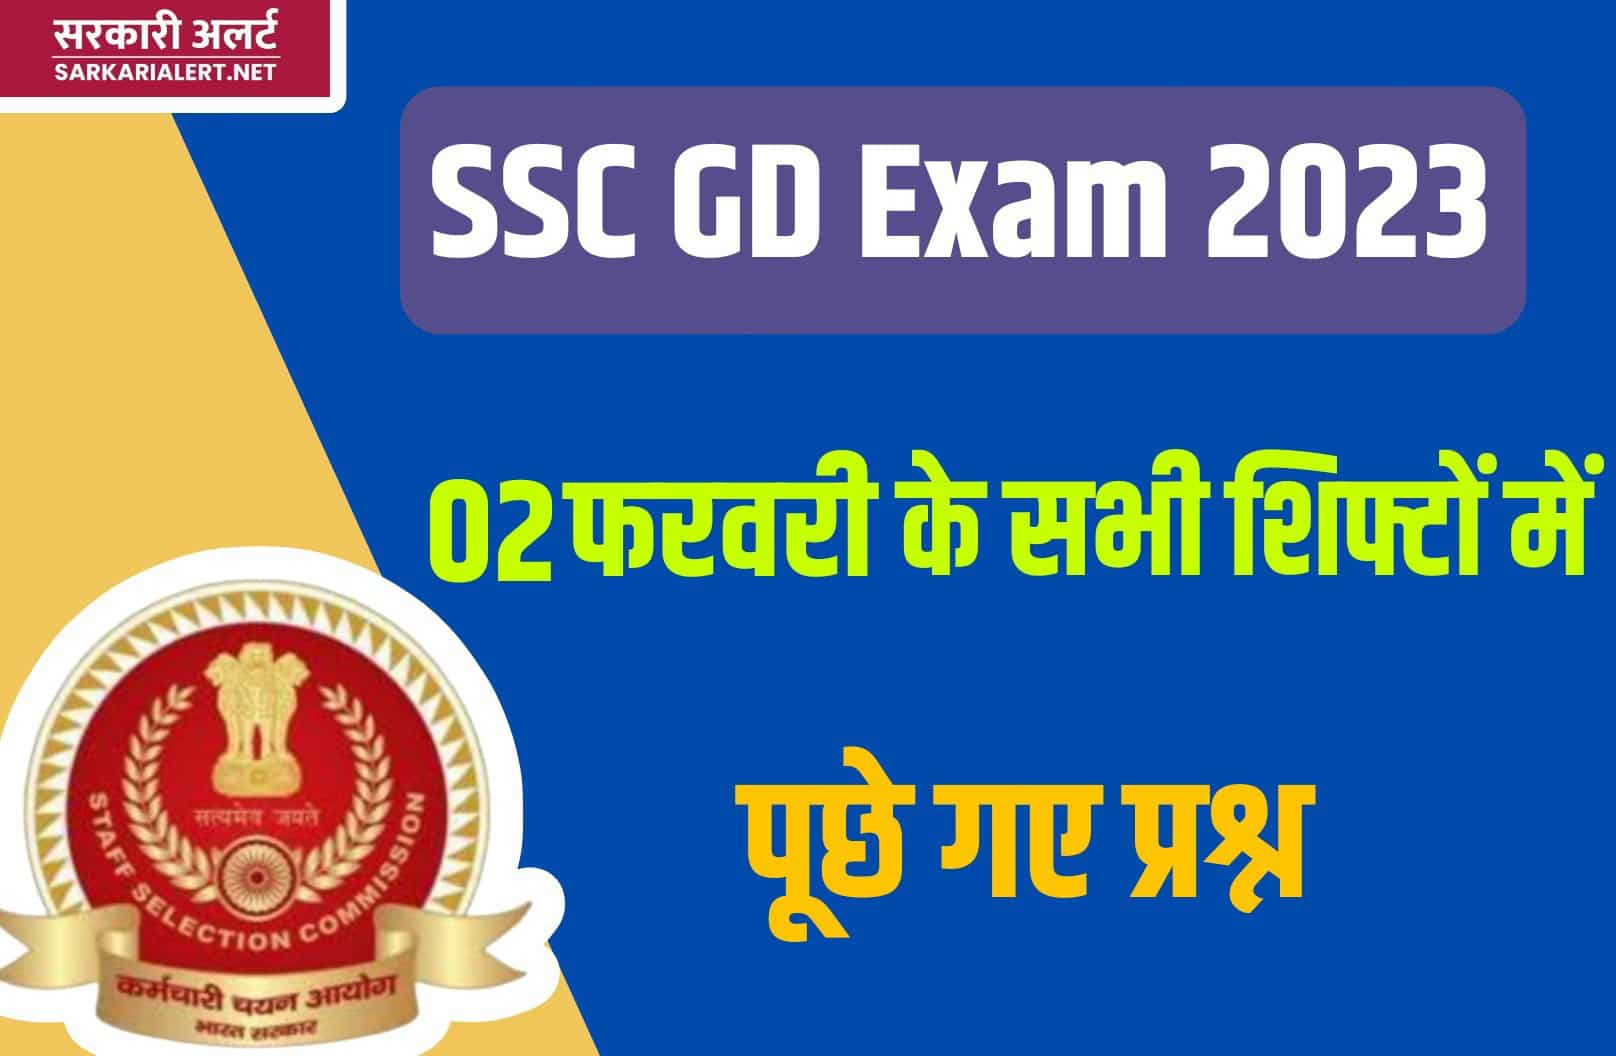 SSC GD Exam 2023 | 02 फरवरी परीक्षा के सभी शिफ्टों में पूछे गए मुख्य प्रश्नों का संग्रह